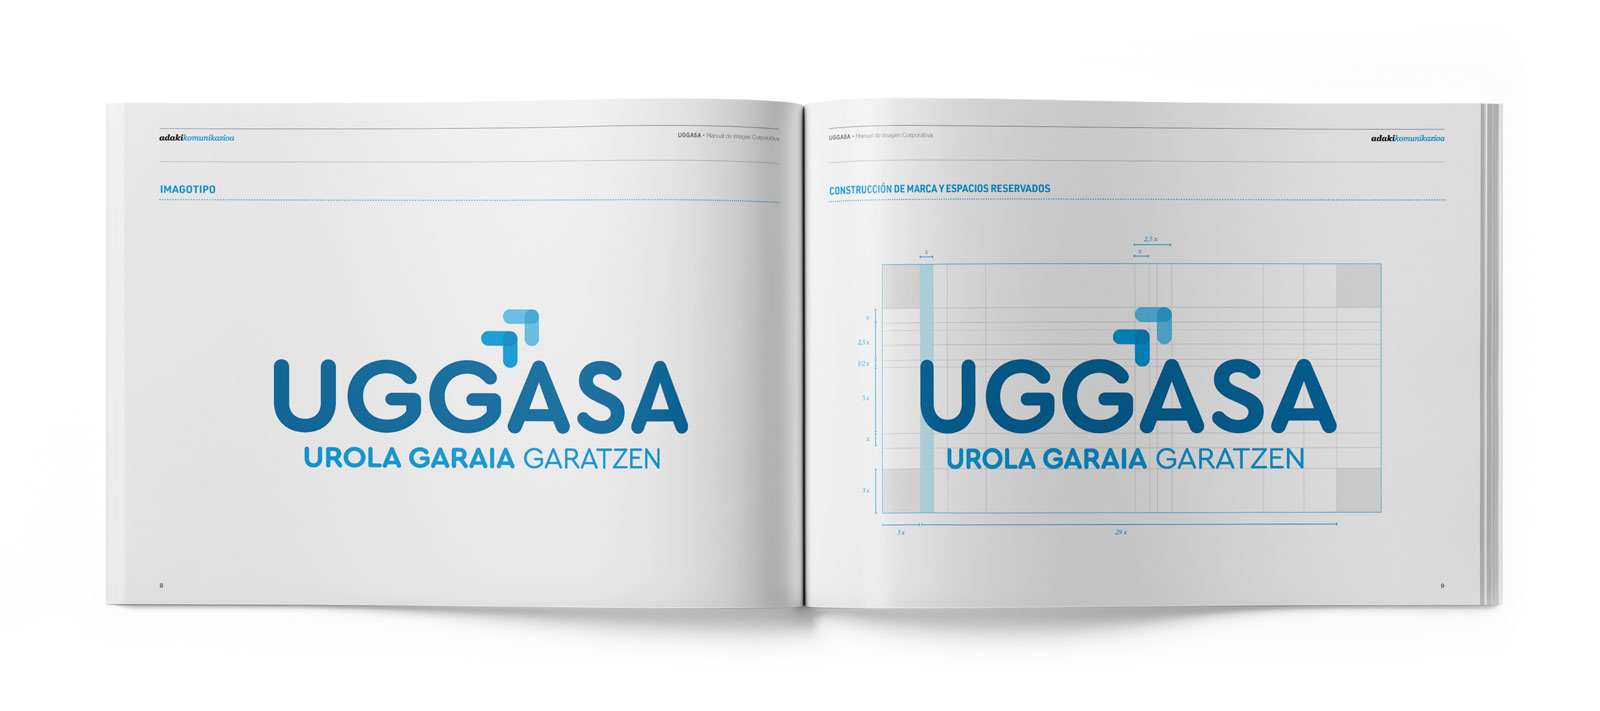 Interior 02 del Manual de marca Uggasa